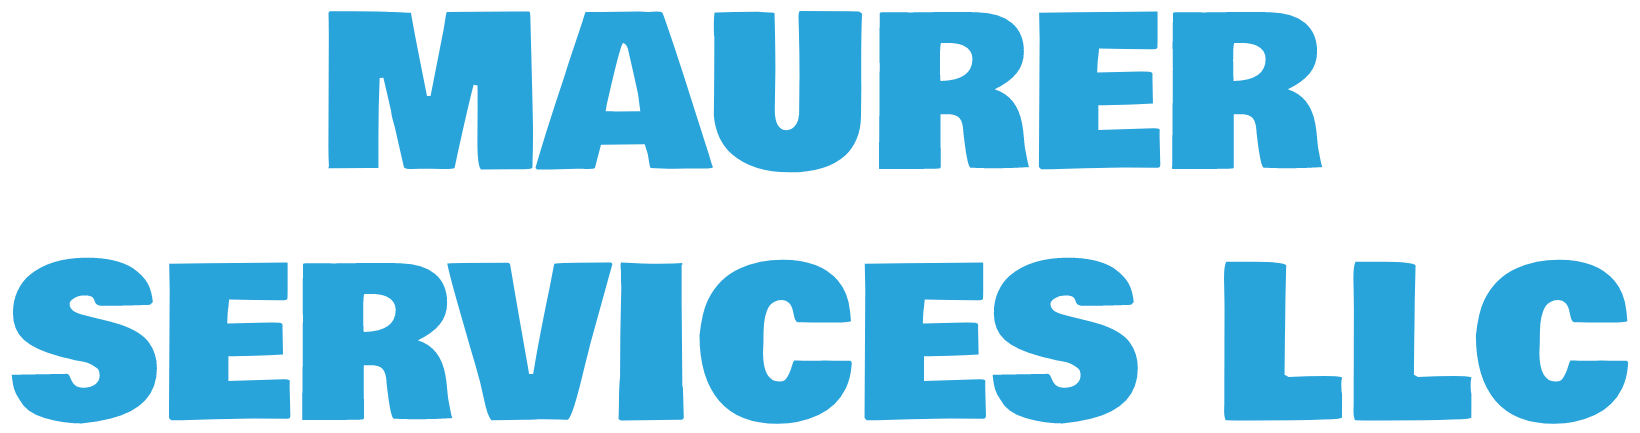 Maurer Services LLC - Logo